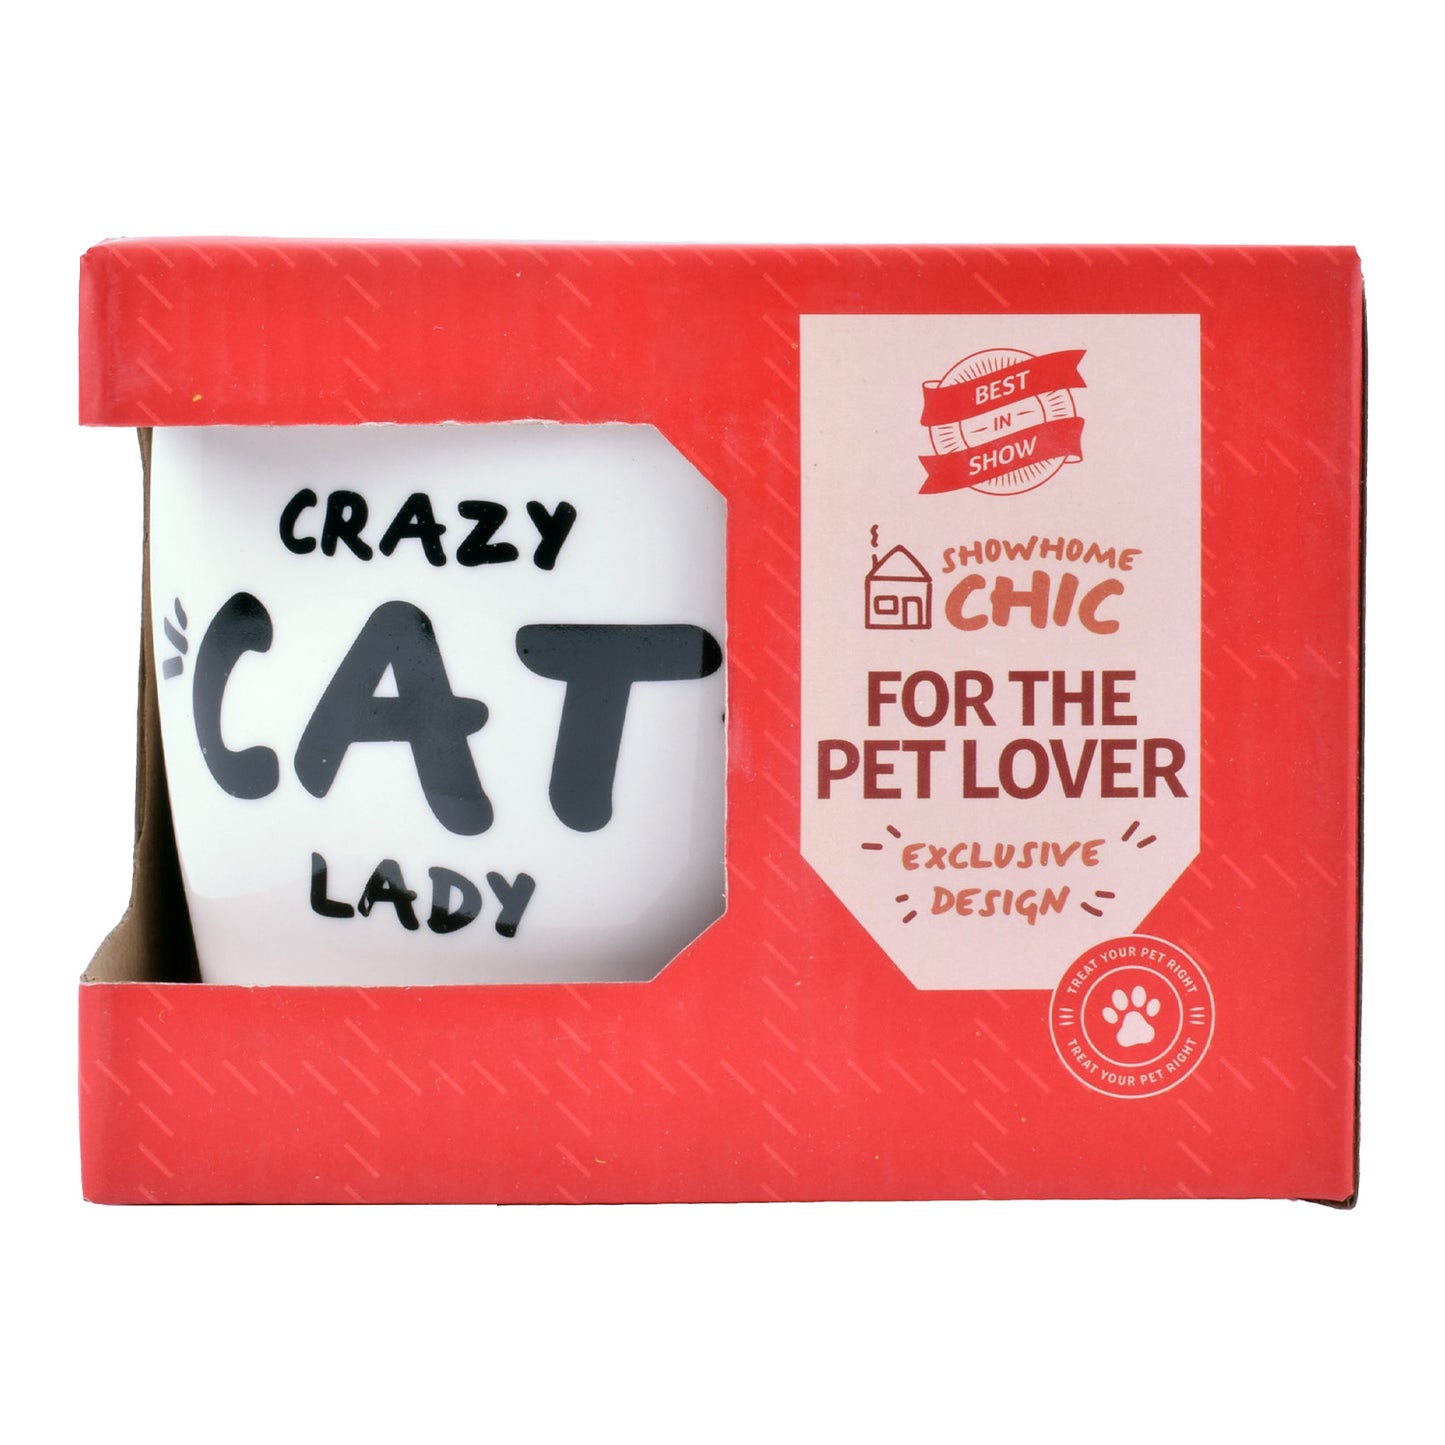 'Crazy Cat Lady' Mug